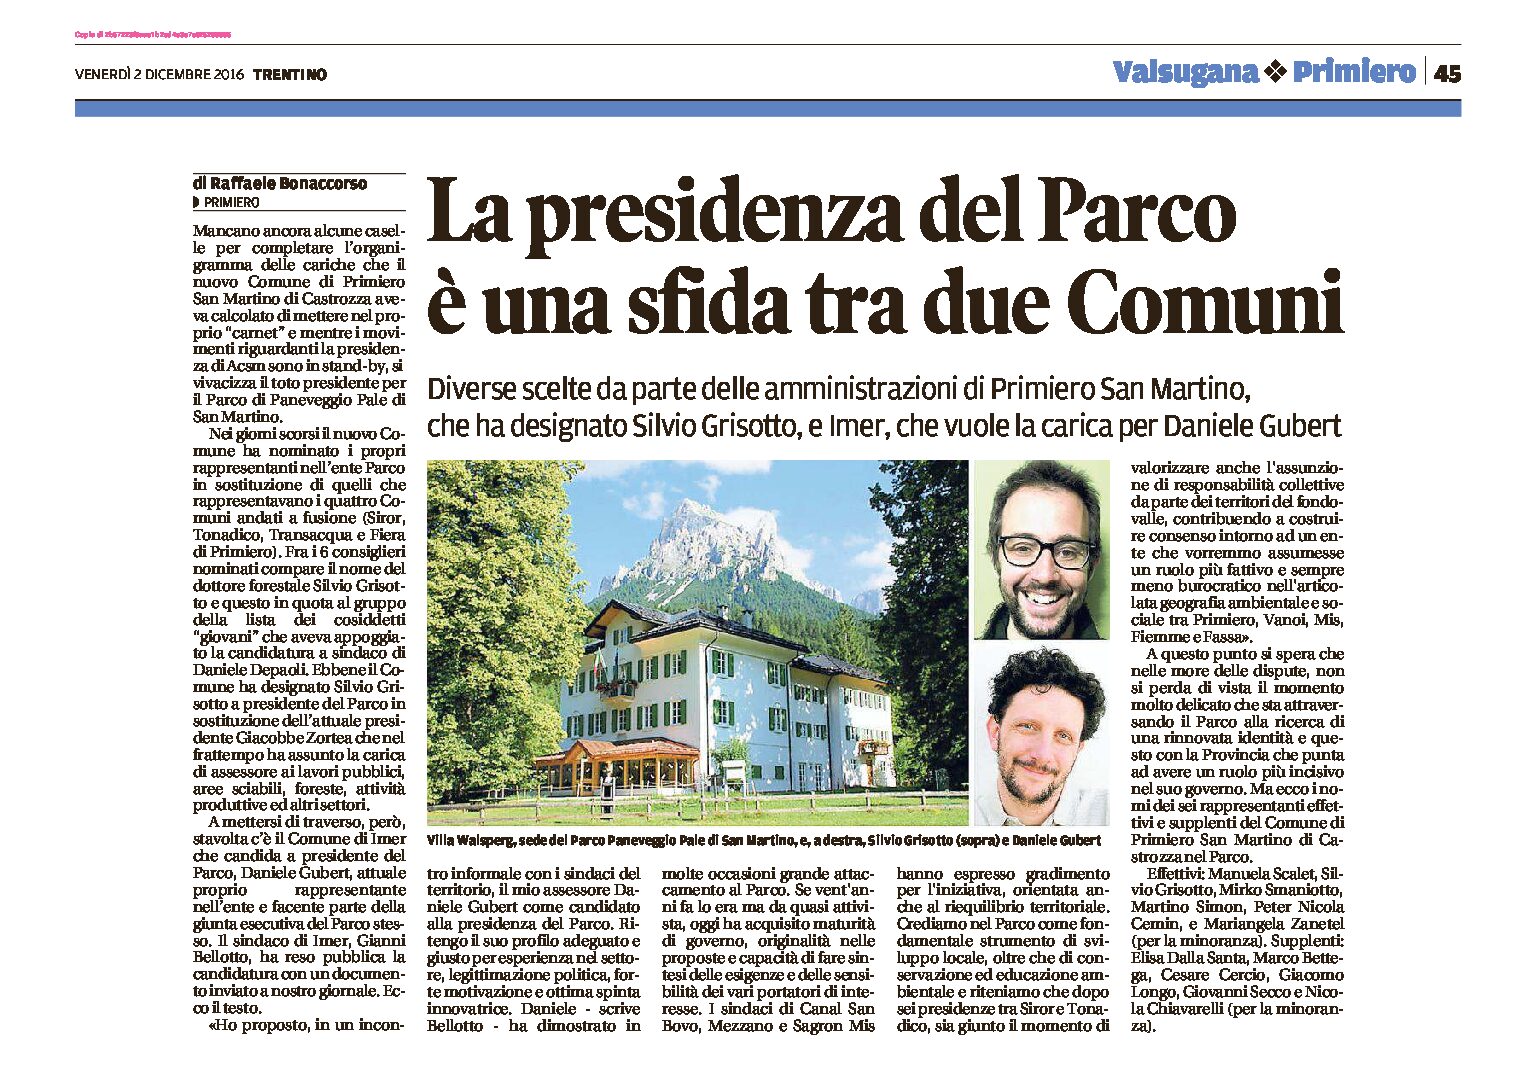 Parco di Paneveggio: la presidenza è una sfida tra due Comuni